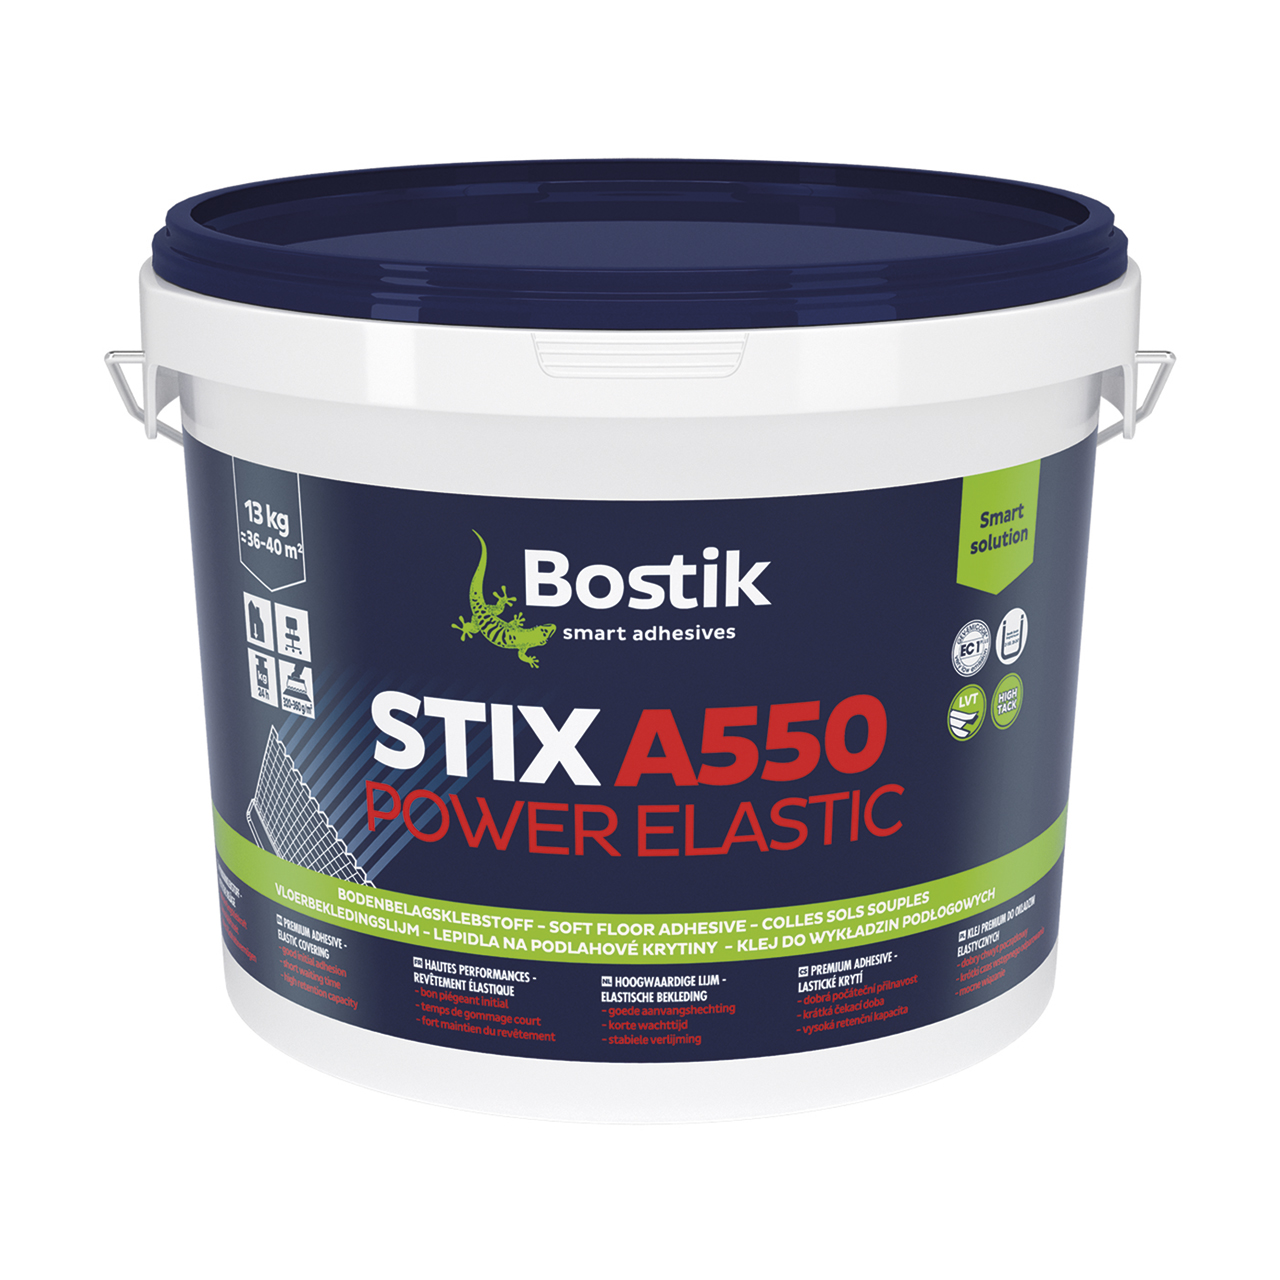 Bostik Premiumkleber für Vinylböden STIX A550 Power Elastic 6 kg